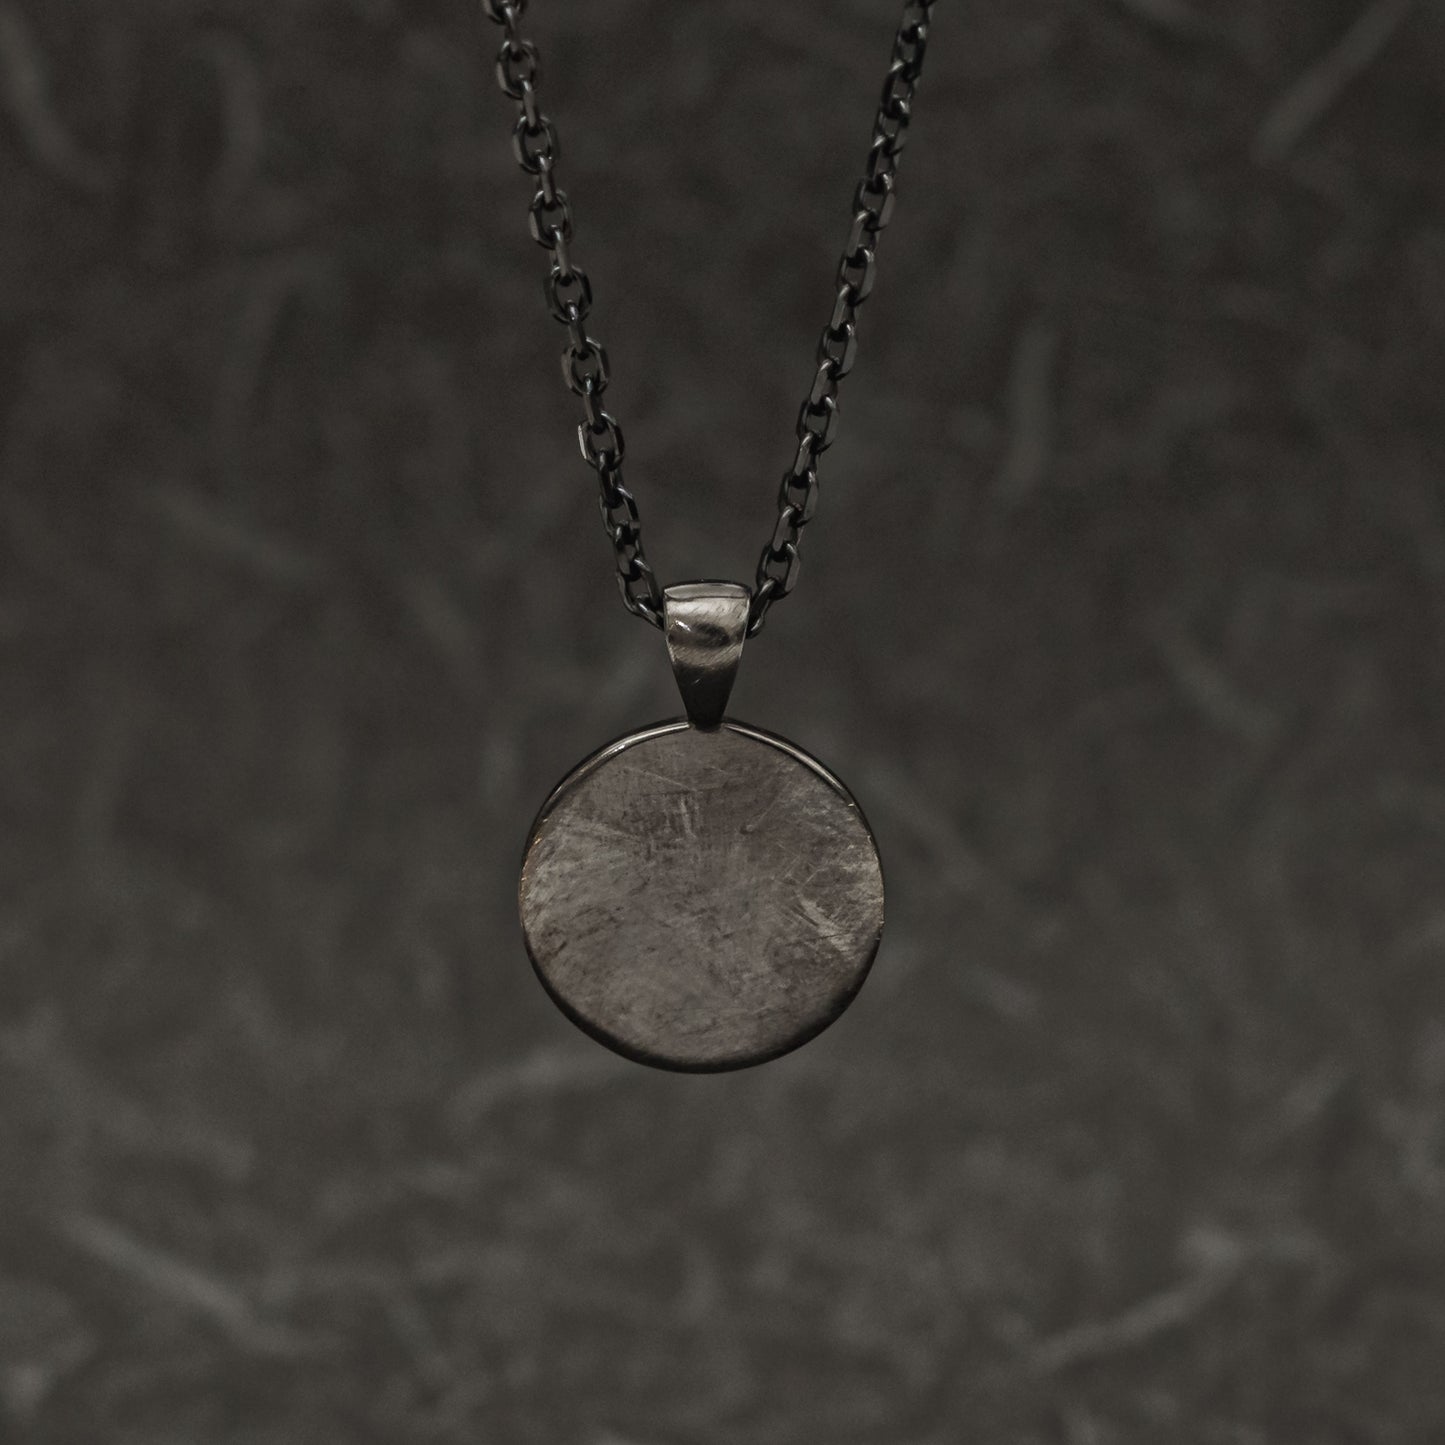 Silver Edokiriko Pattern Necklace (64-3767)